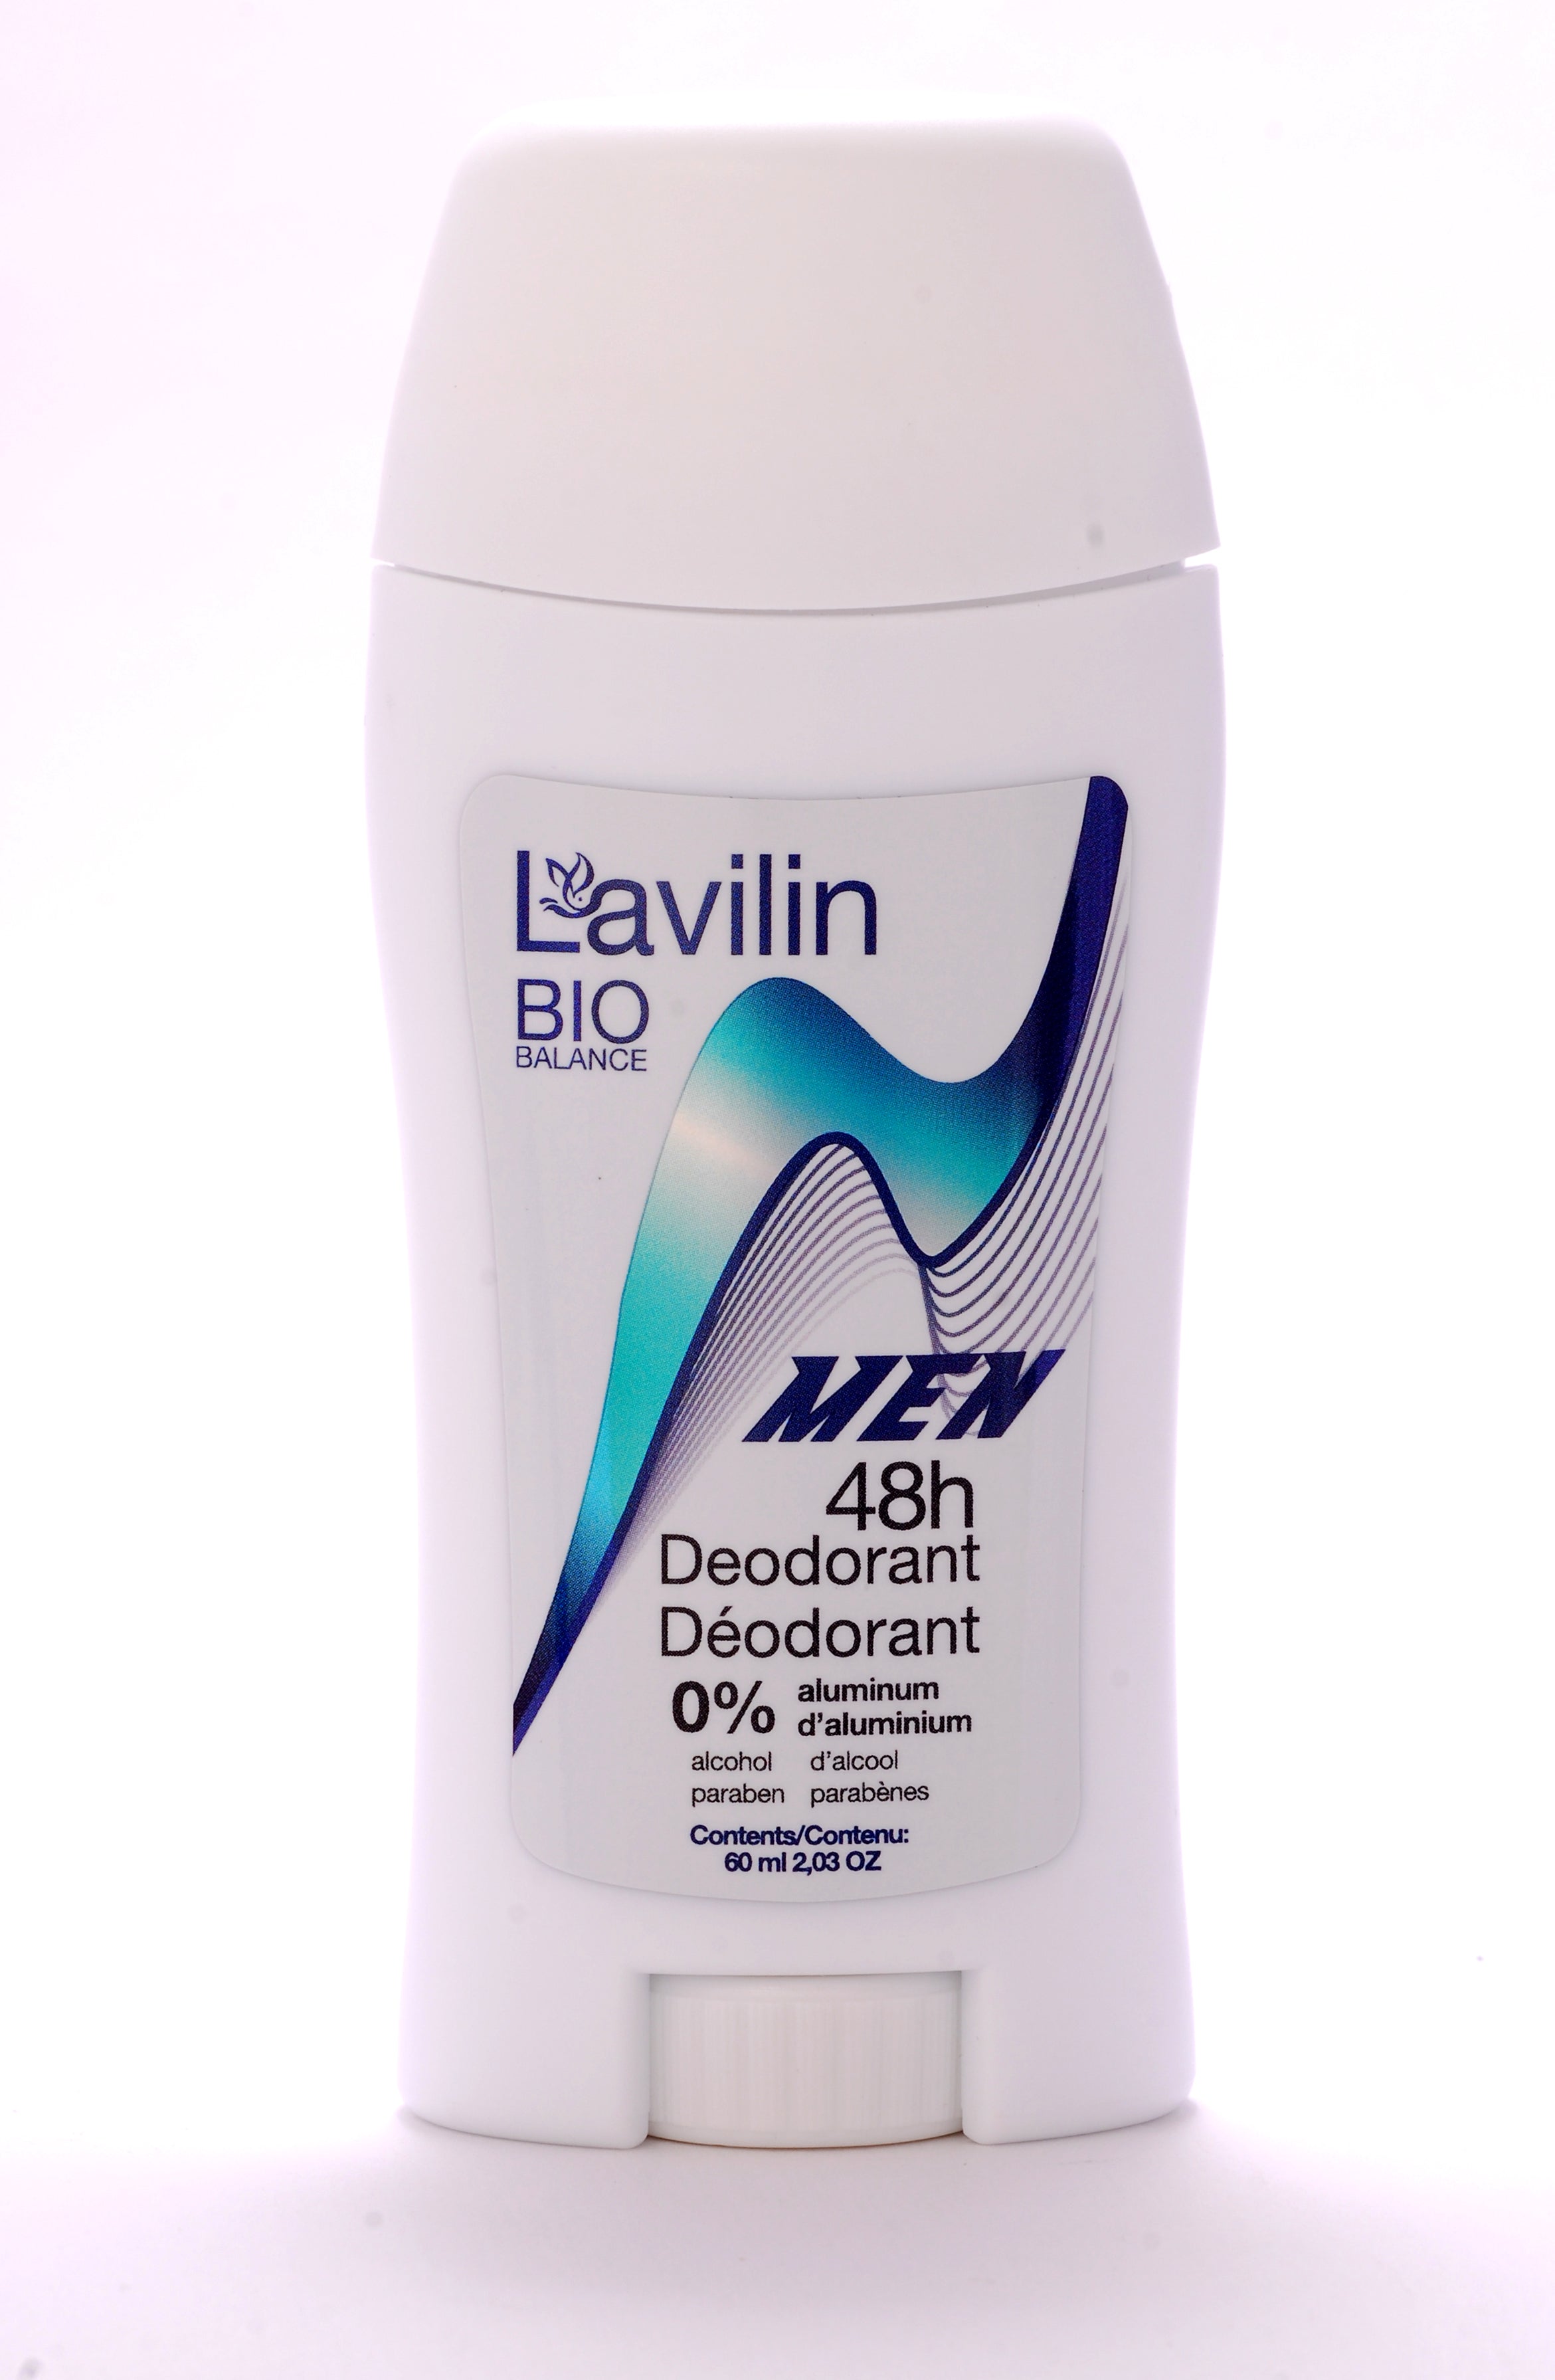 Men 48h deodorant stick (s-aluminum, s-alcohol, s-parabens for men) 60ml